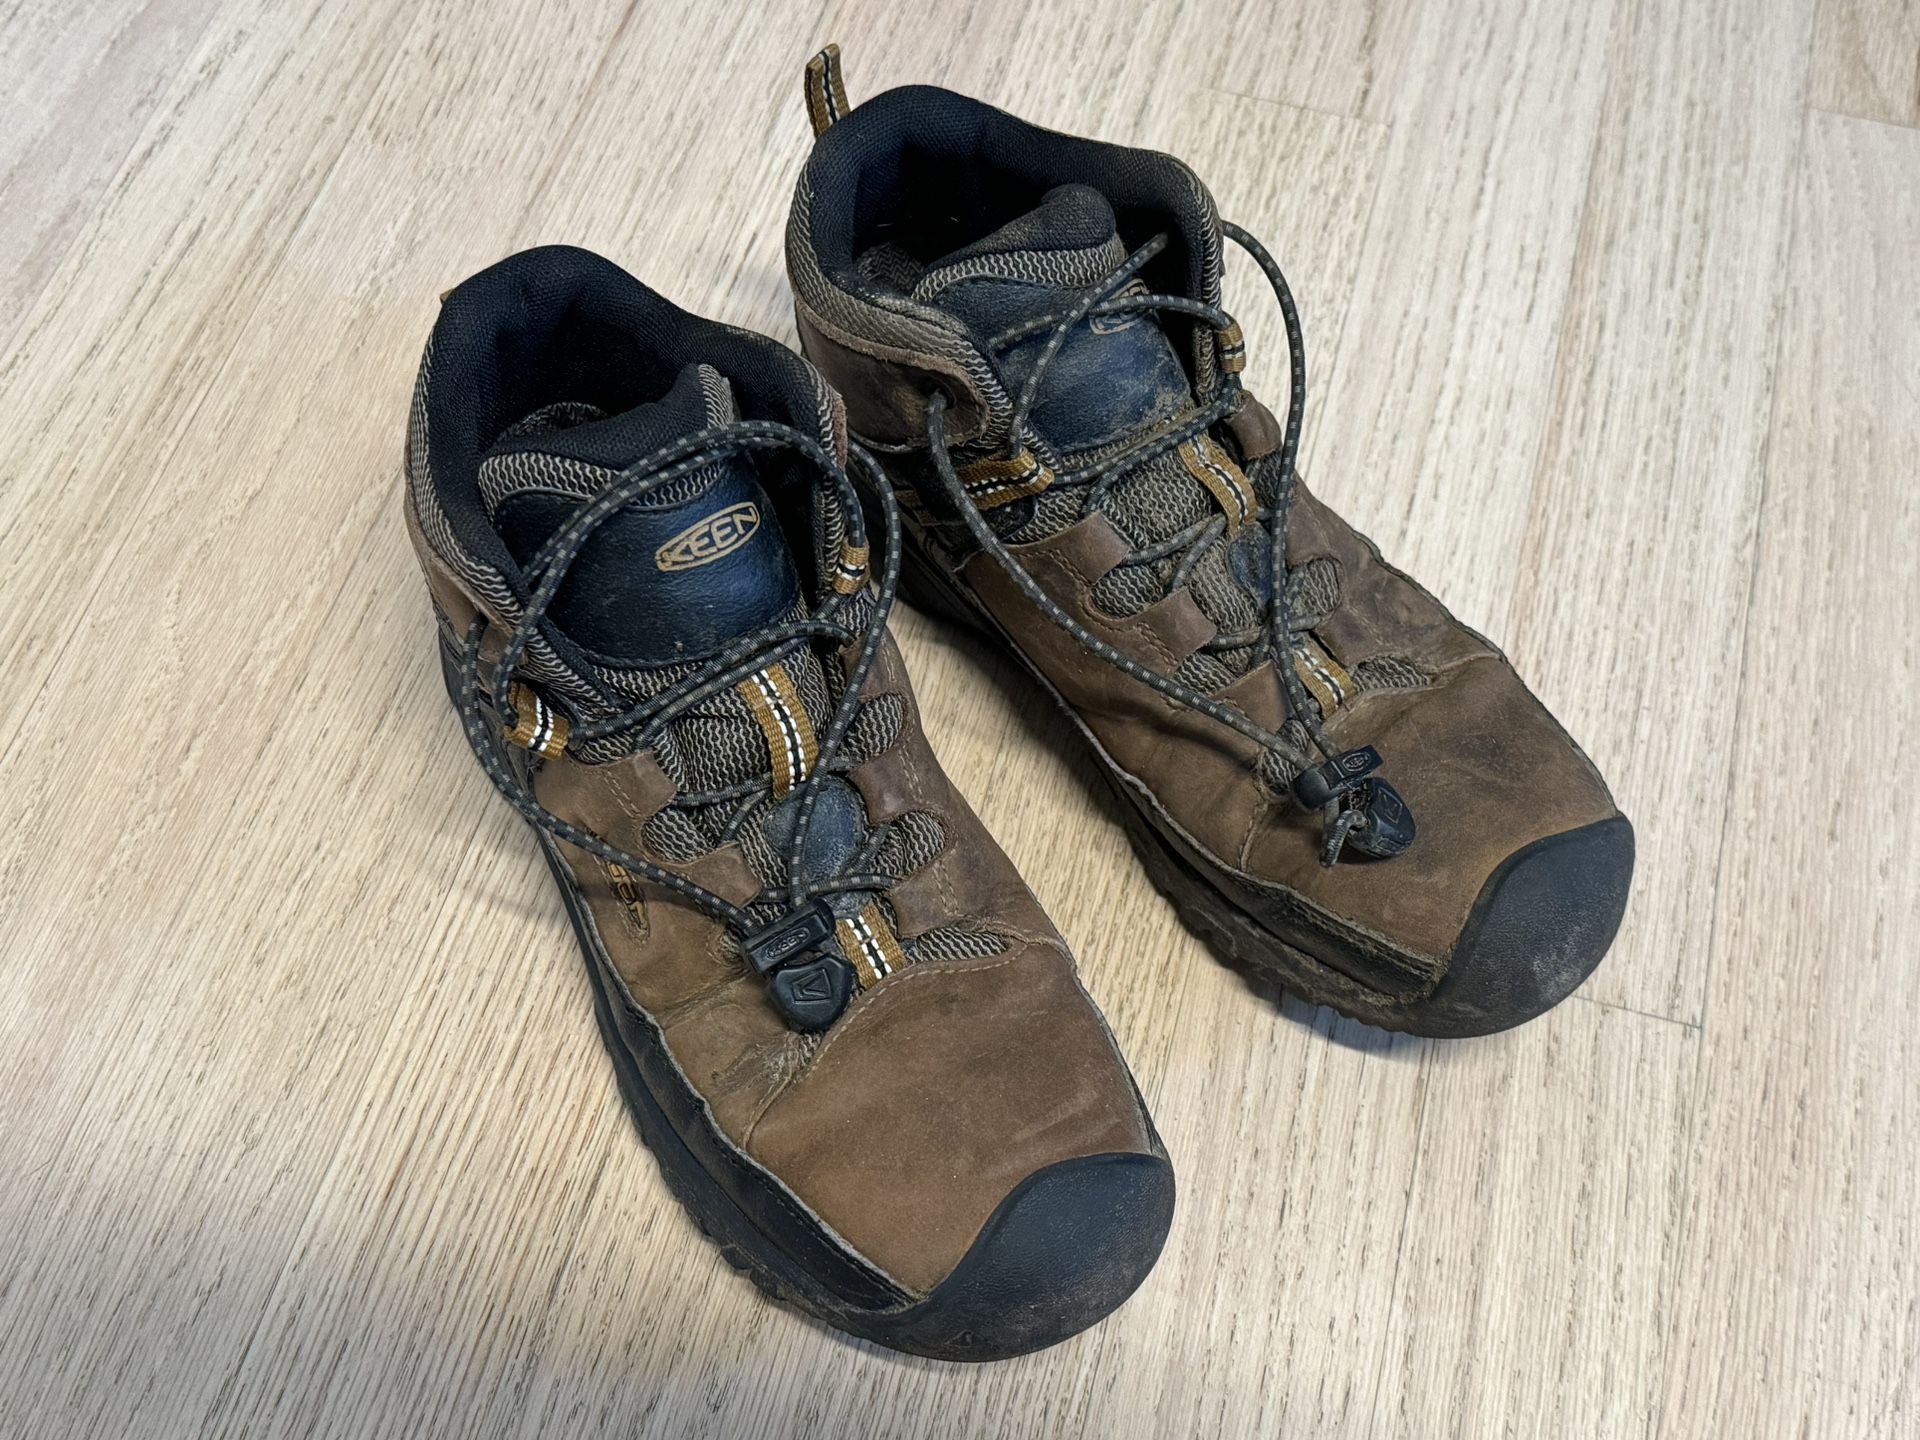 Kids size 4 Keen waterproof hiking boots